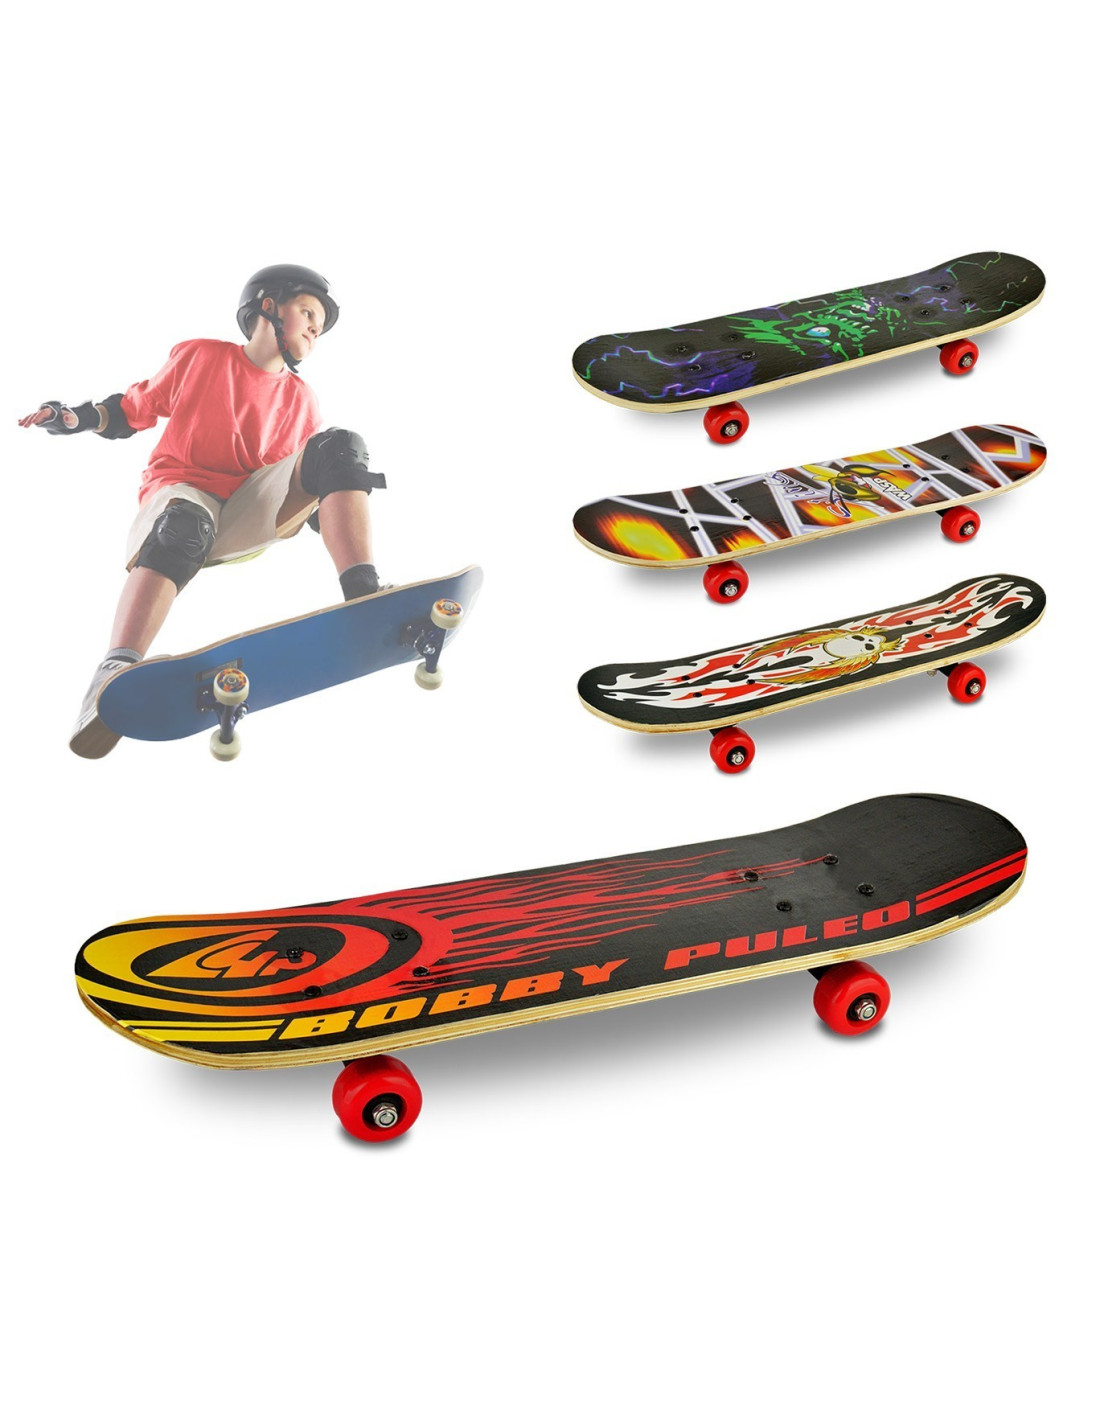 748273 Skateboard enfants adolescents 4 roues différents modèles 59 x